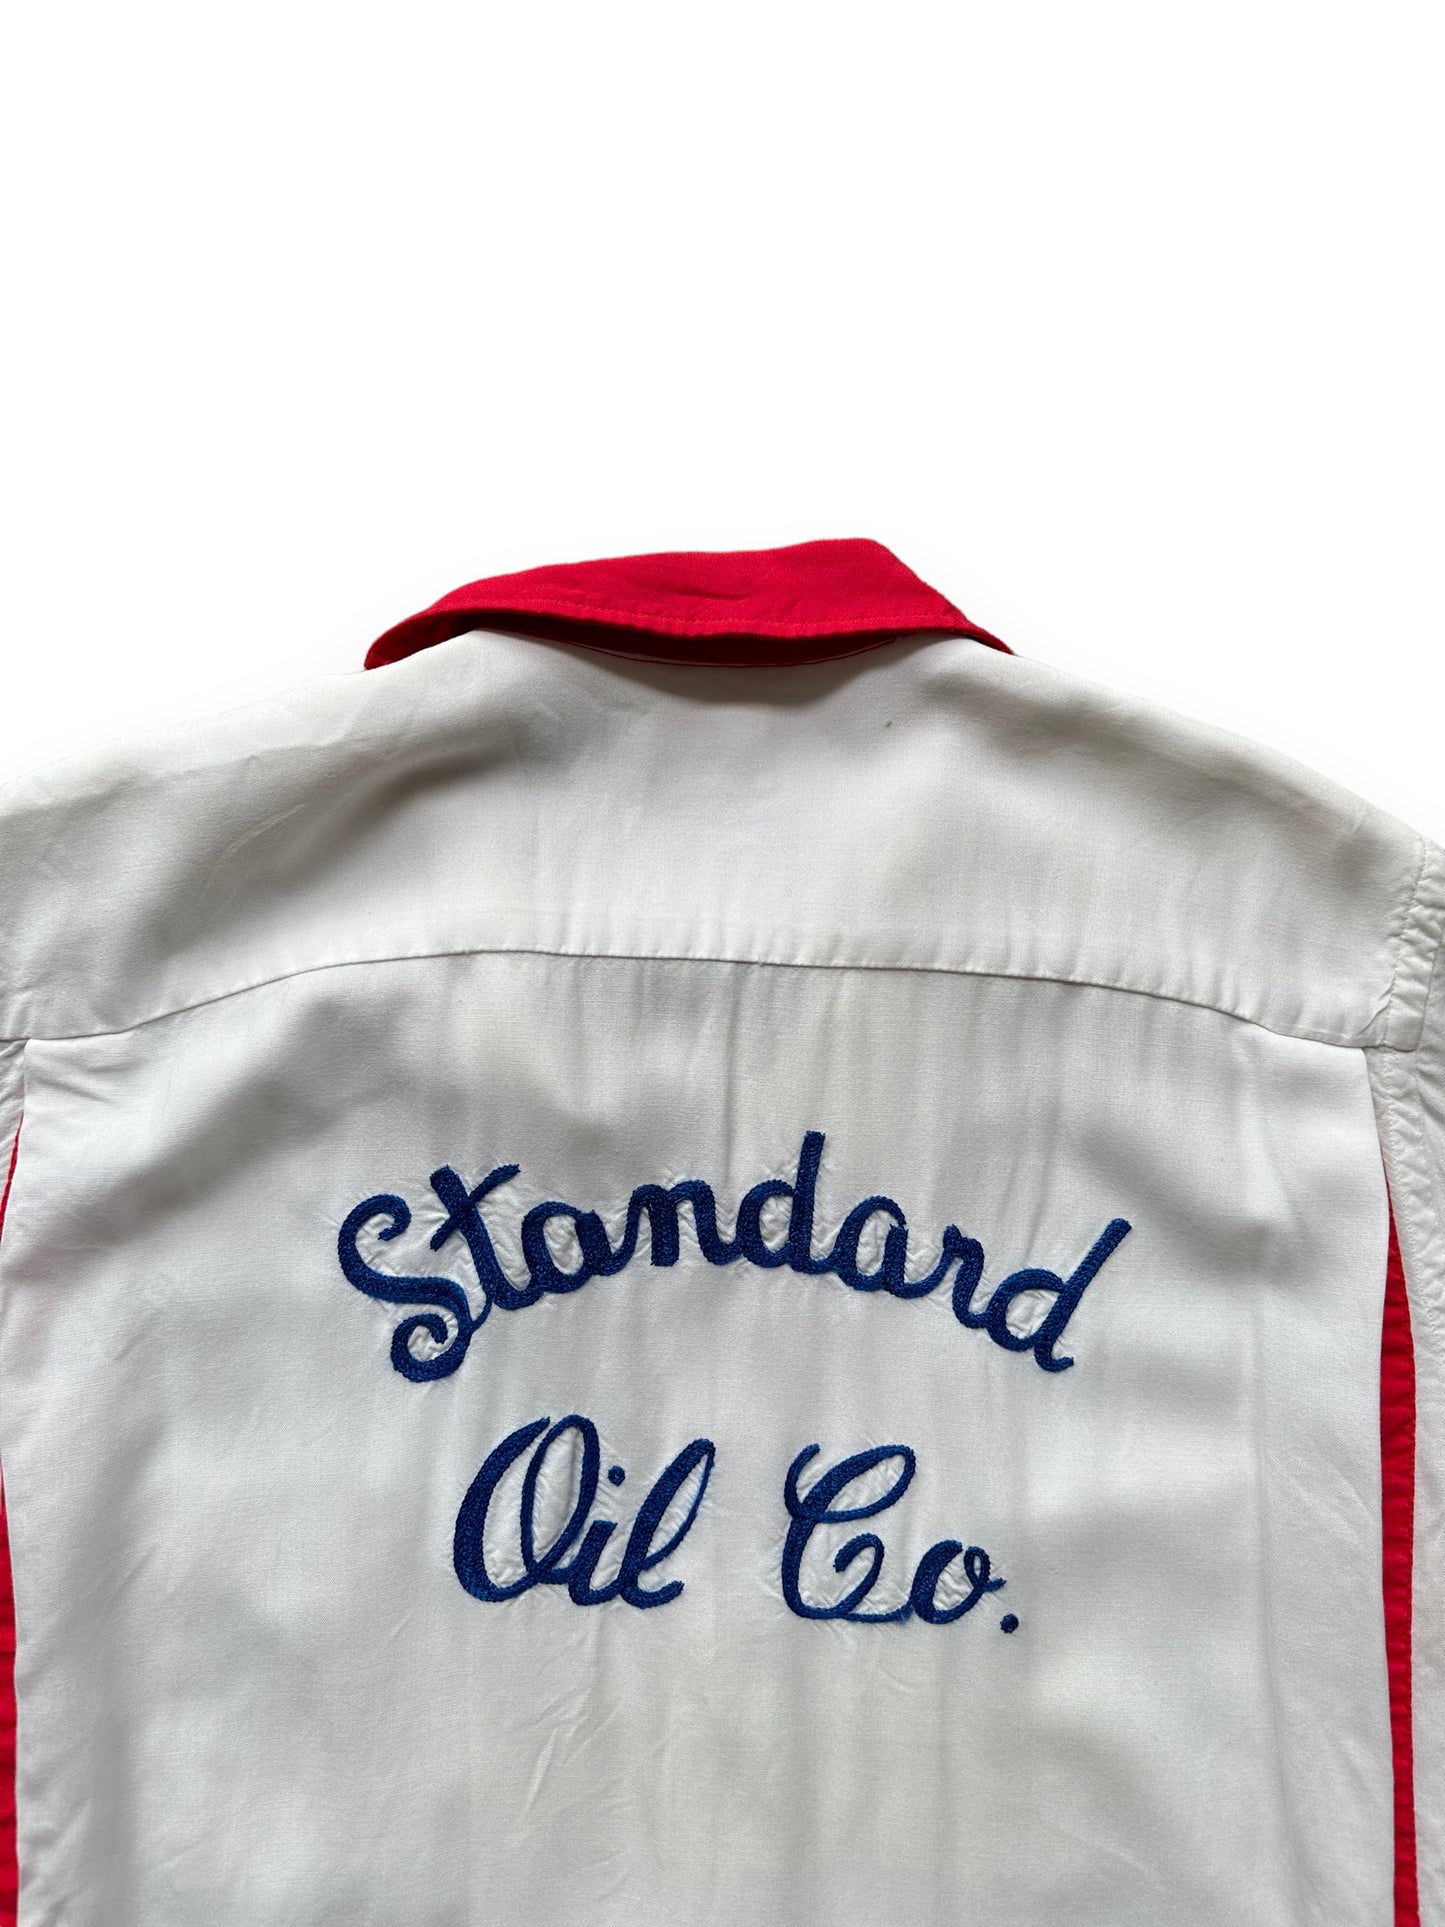 Back collar of Vintage "Standard Oil Co." Chainstitched Bowling Shirt SZ M | Vintage Bowling Shirt Seattle | Barn Owl Vintage Seattle